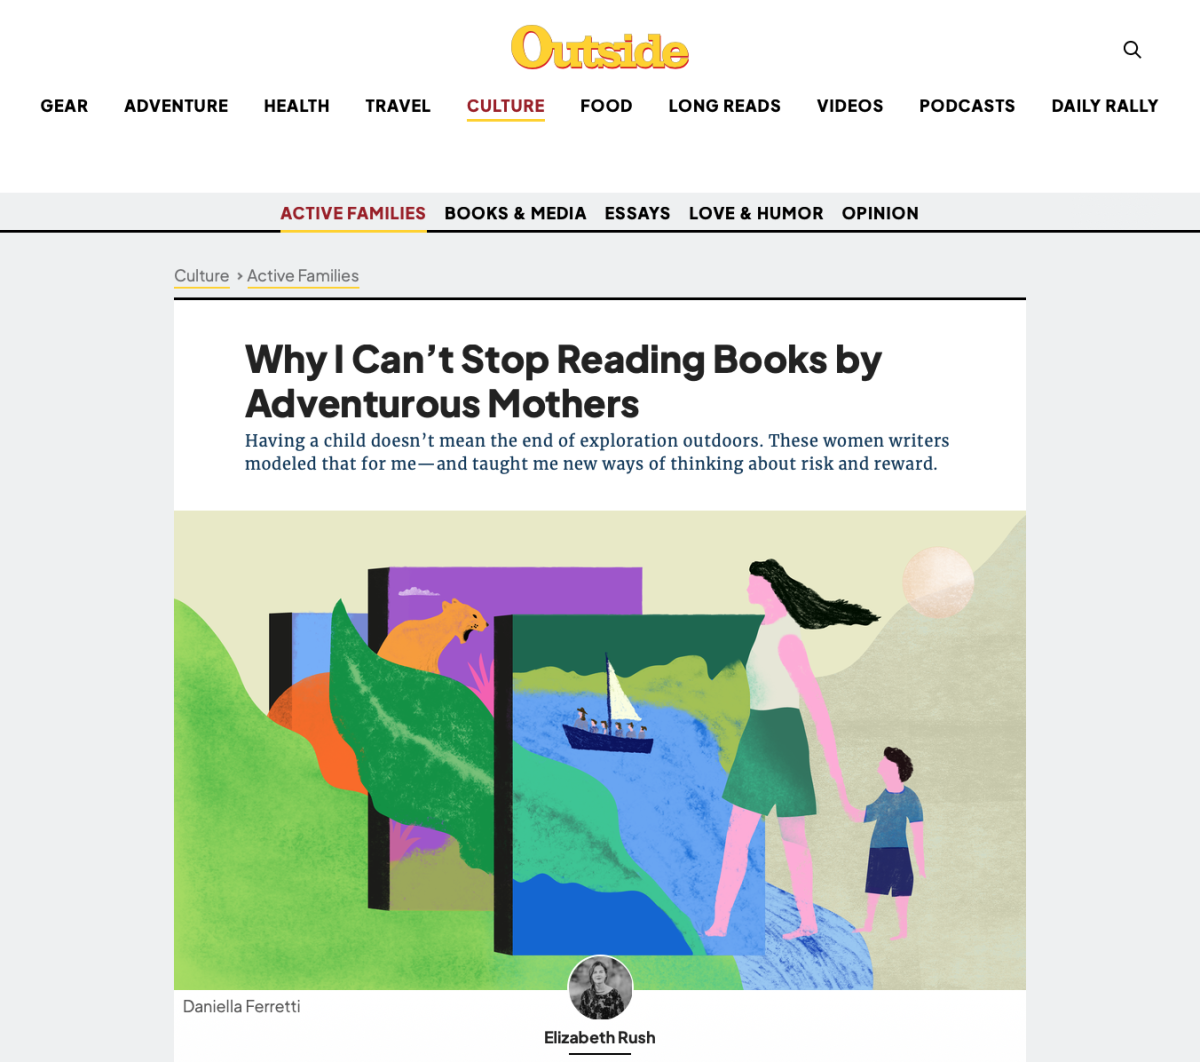 Outside Magazine / Pourquoi je ne peux pas arrêter de lire des livres de mères aventureuses - Daniella Ferretti - Anna Goodson Agence d'illustration